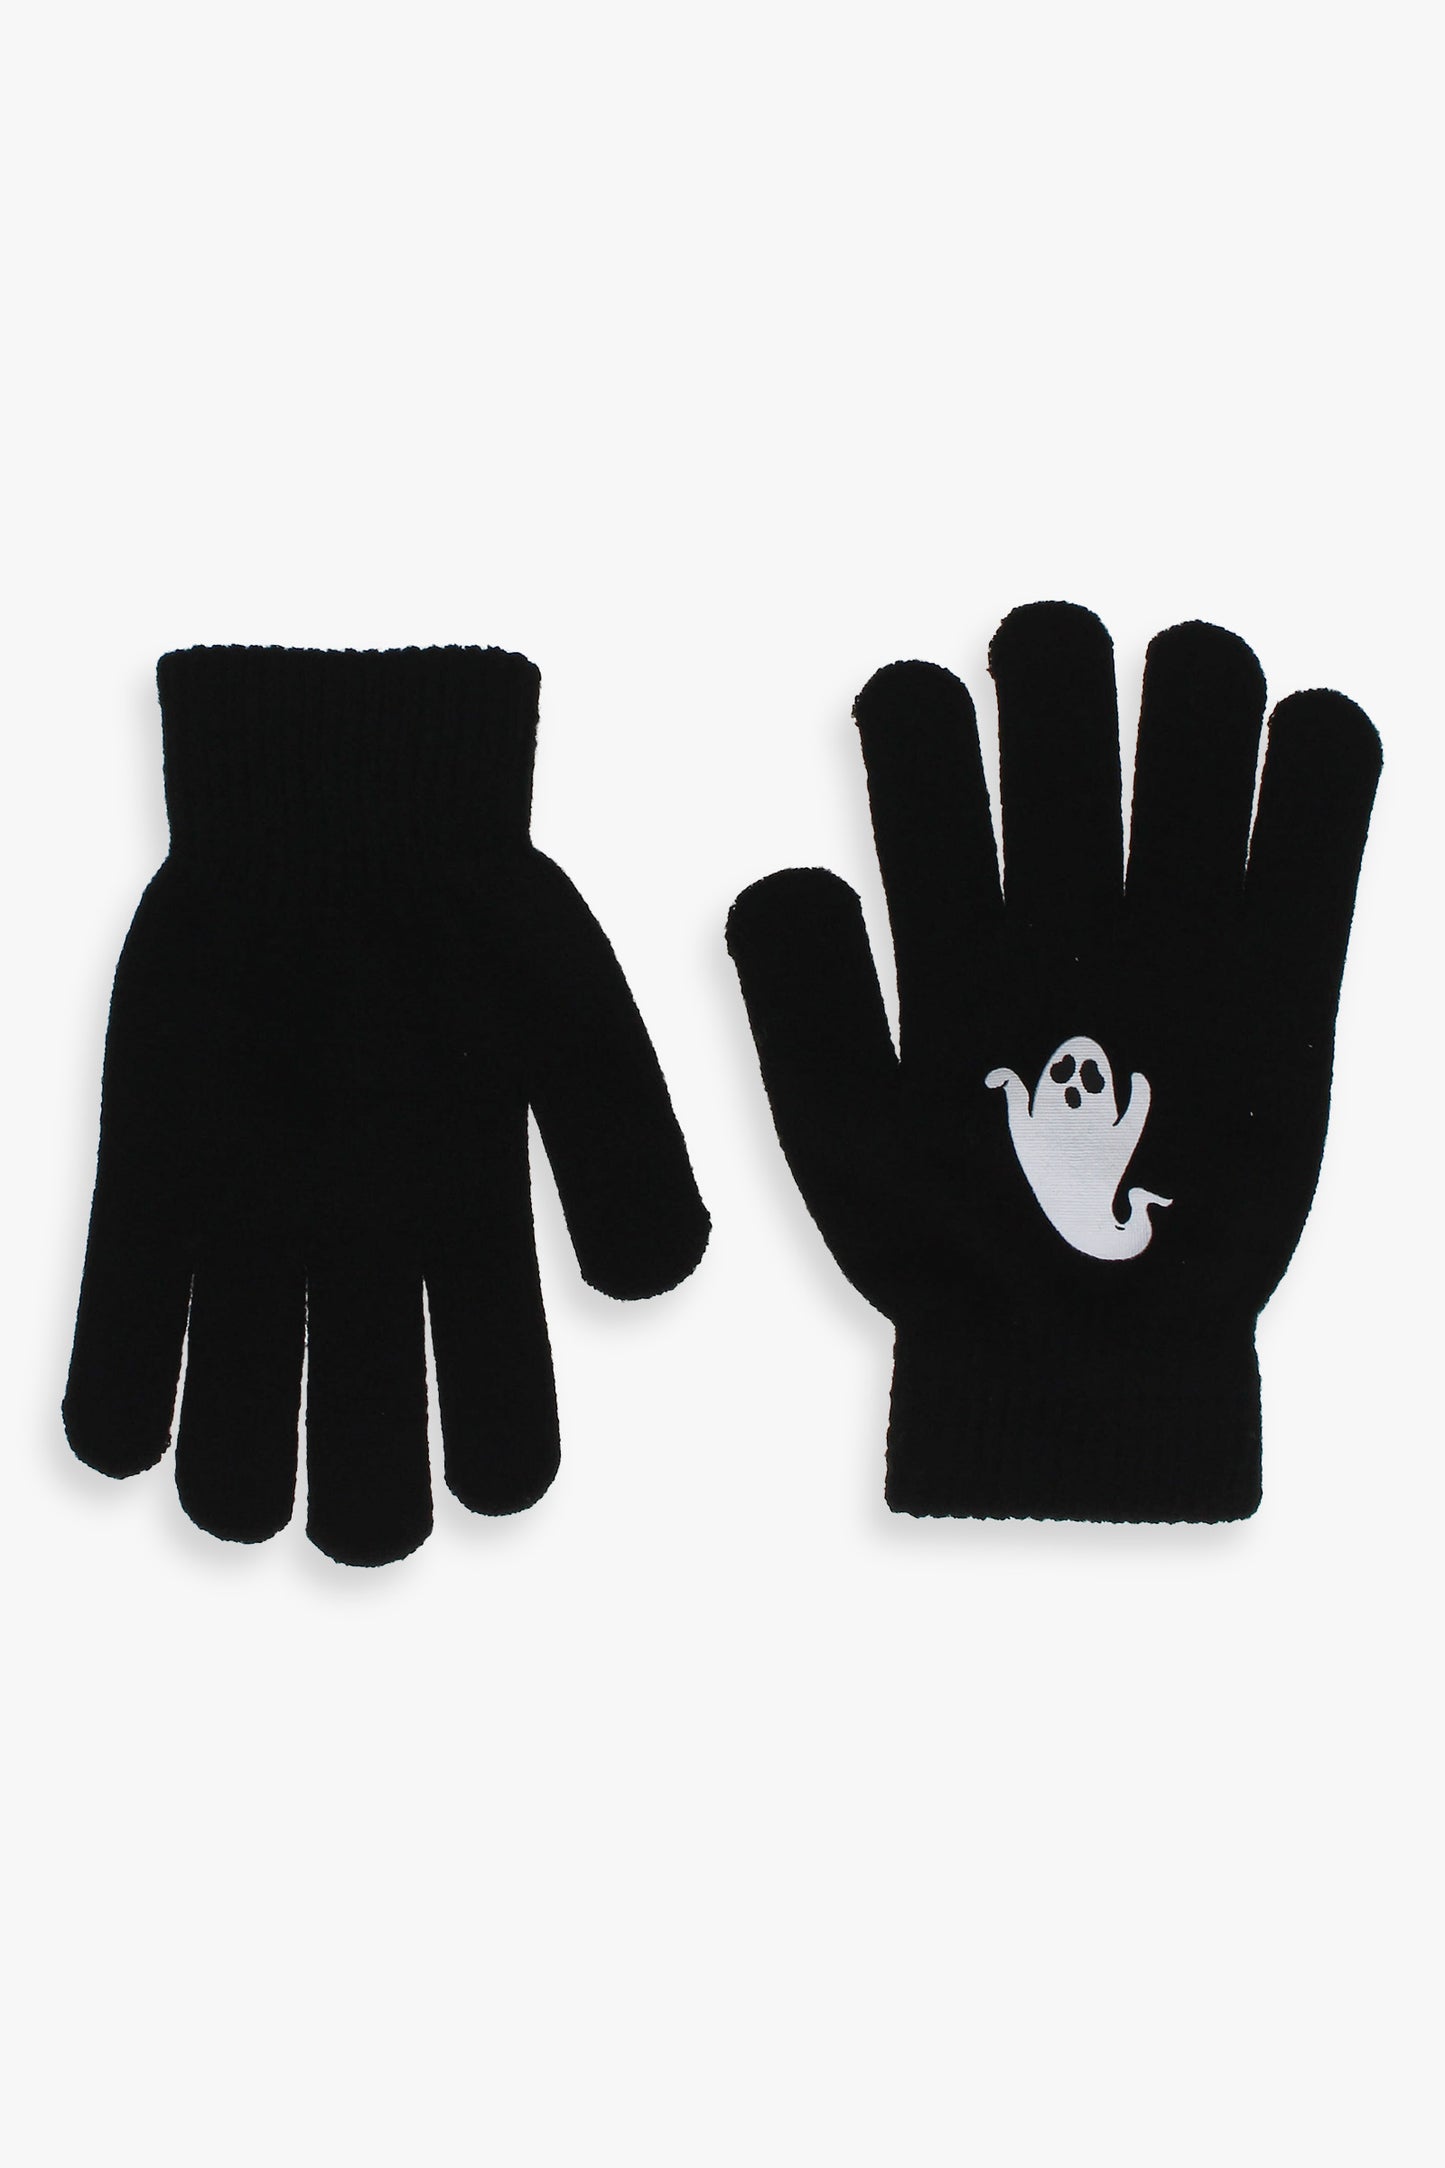 Glow in the Dark Kids Halloween Gloves